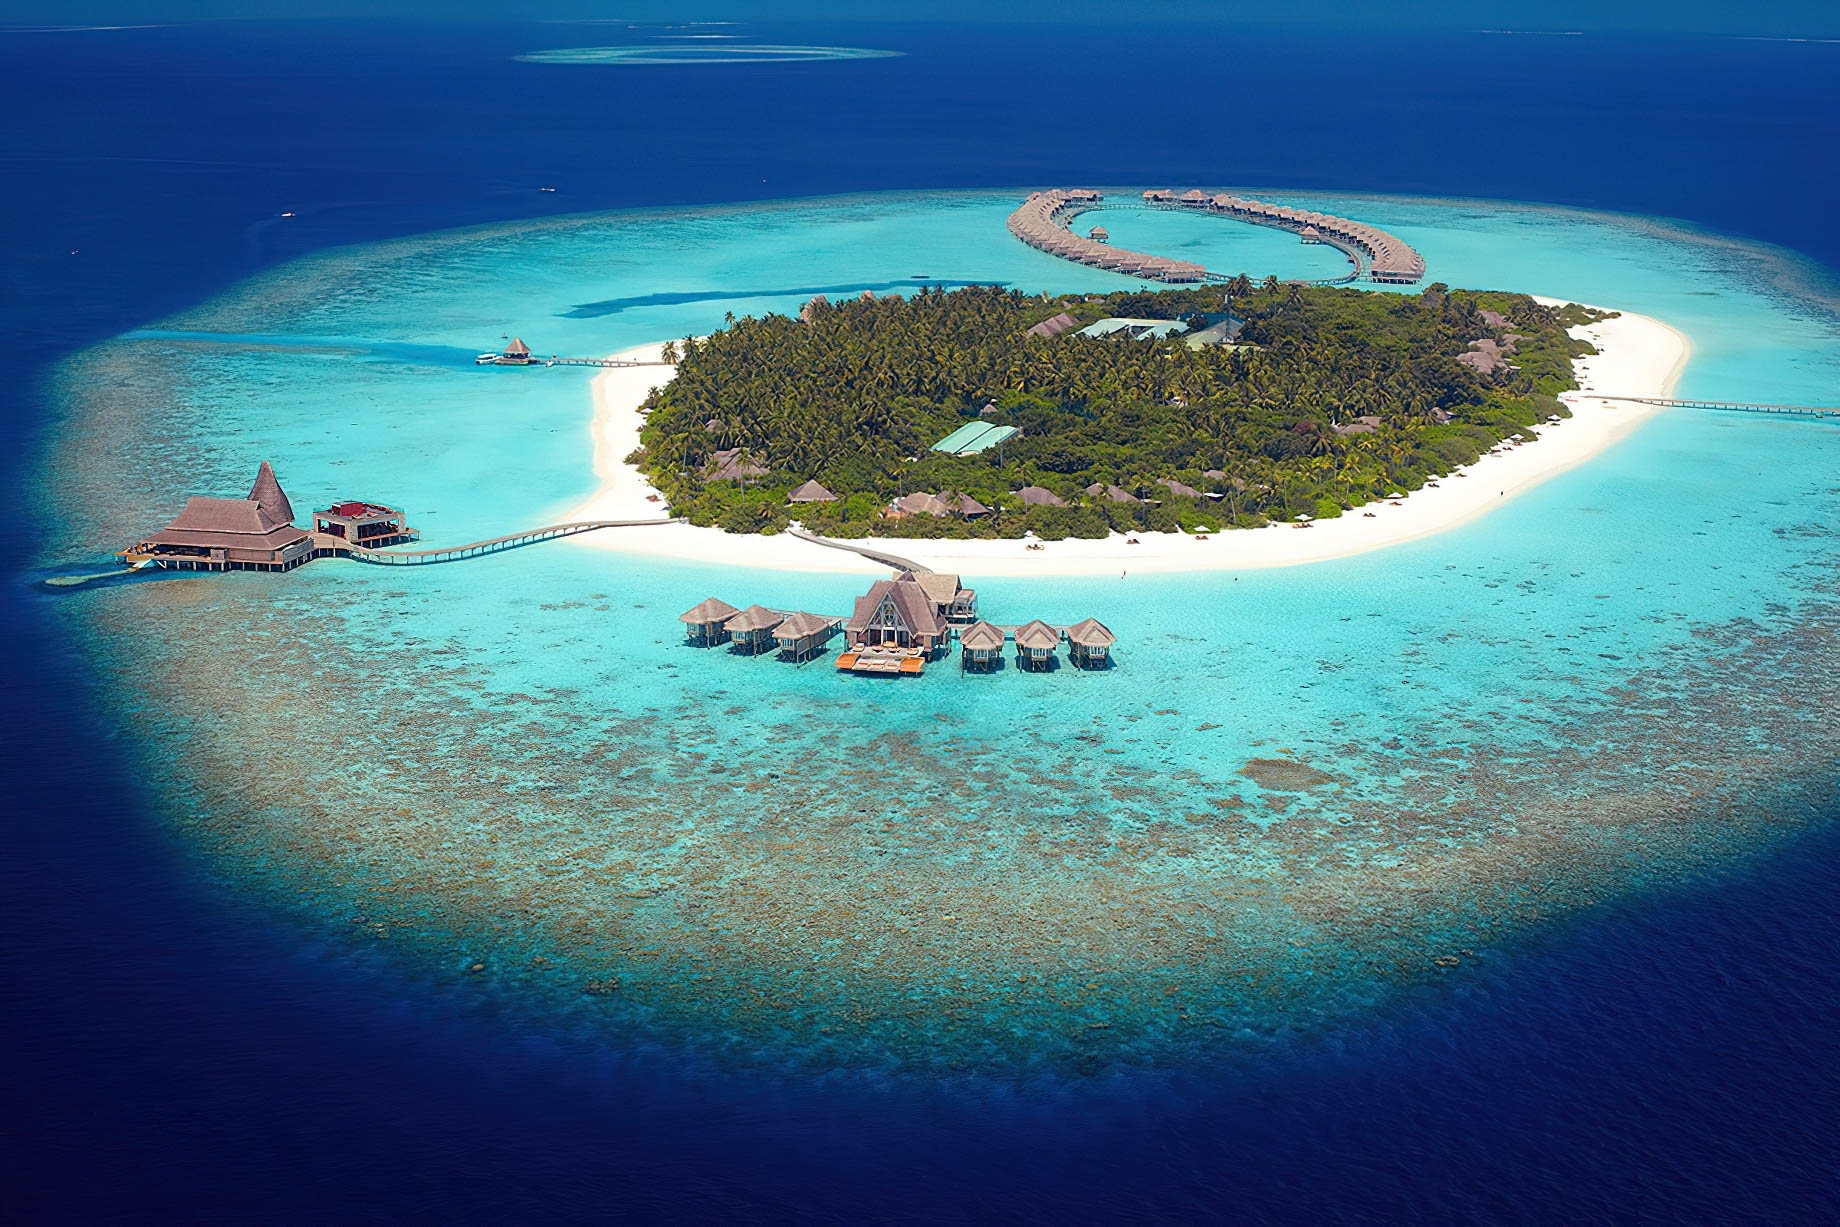 Anantara Kihavah Maldives Villas Resort – Baa Atoll, Maldives – Private Island Aerial View